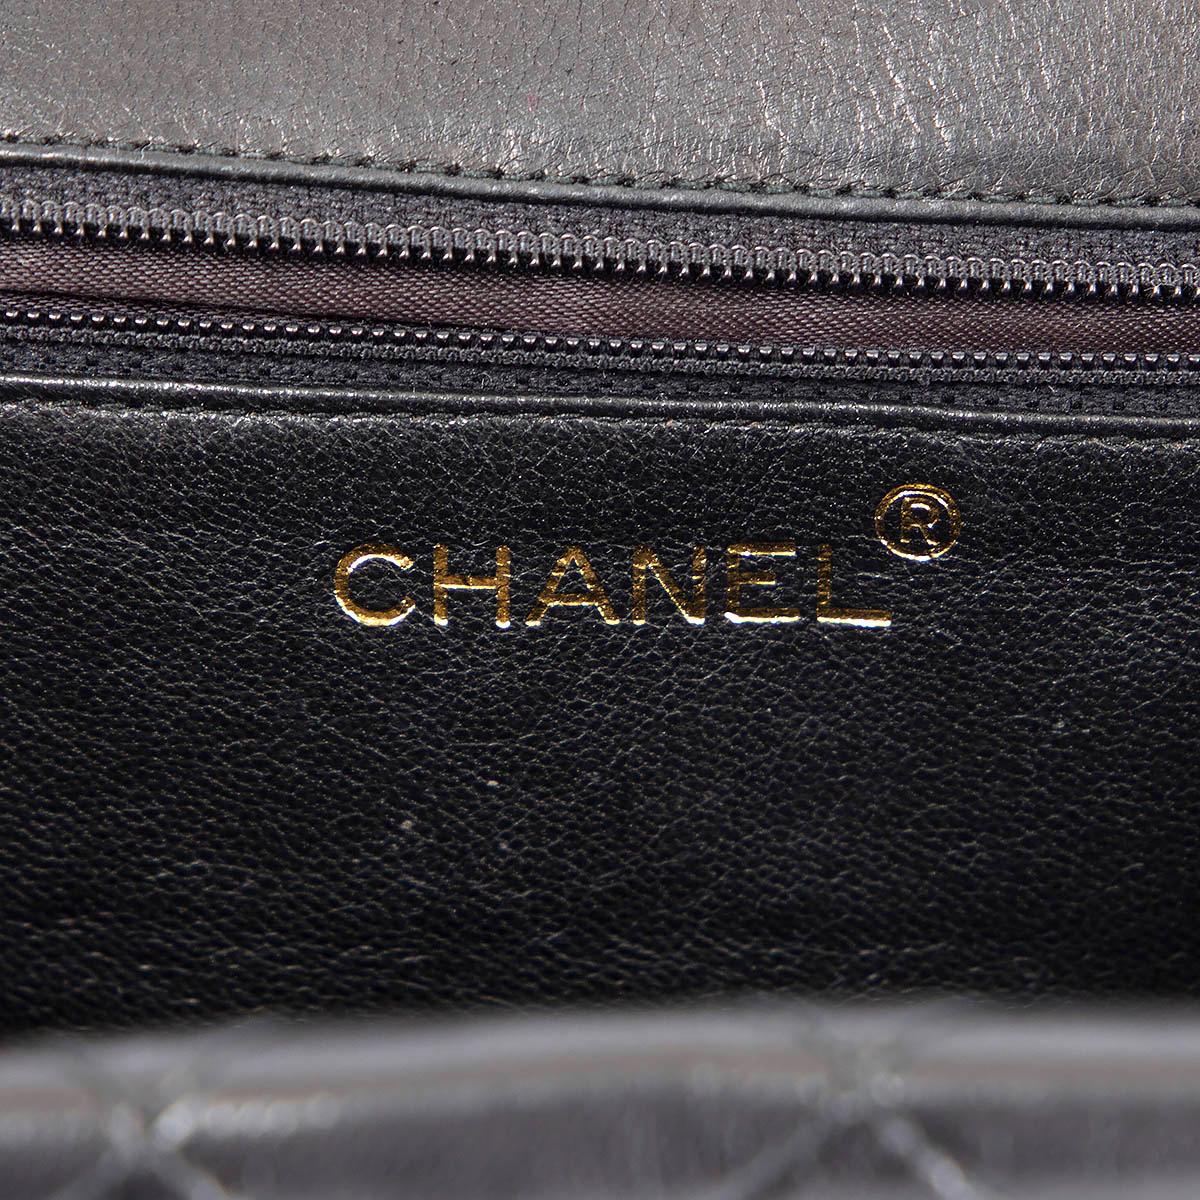 CHANEL black leather CROSSOVER FLAP & TASSEL Shoulder Bag 1989-1991 2